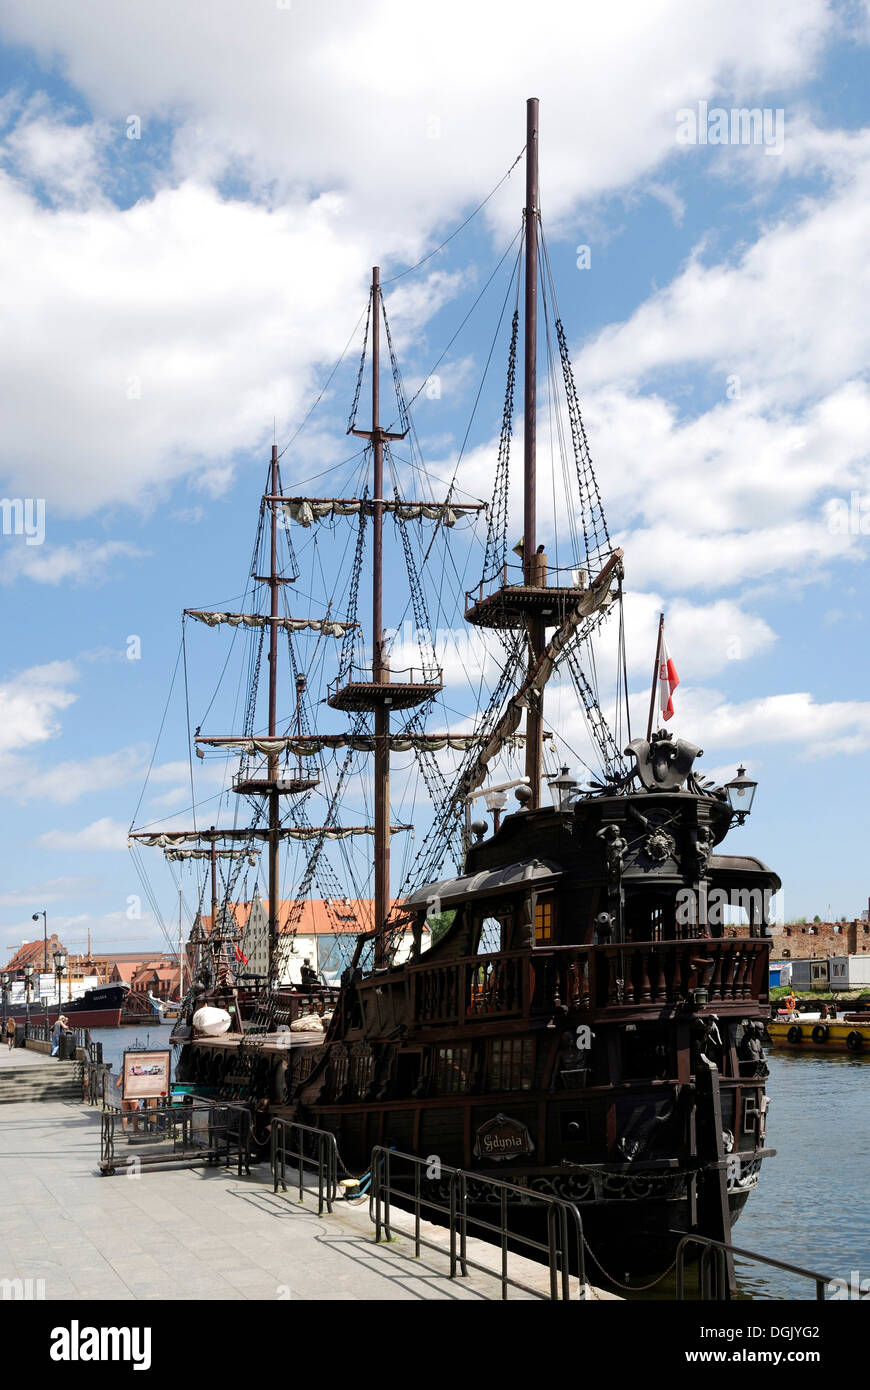 Excursión en barco por el histórico Motlawa en el largo puente en Gdansk. Foto de stock